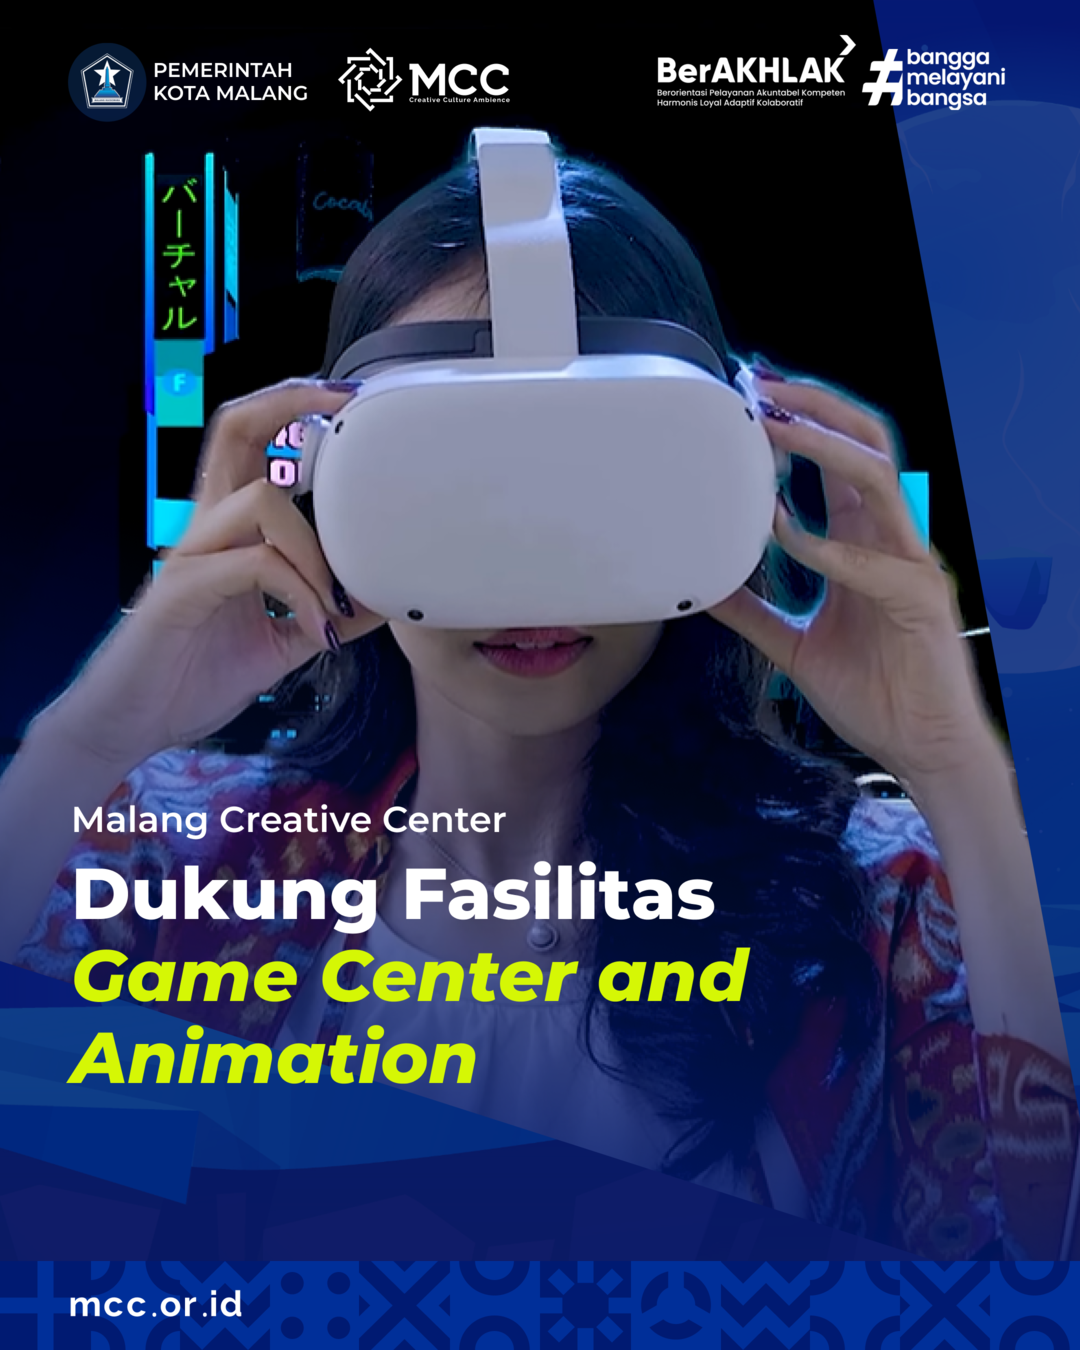 MCC Dukung Fasilitas Game Center and Animation